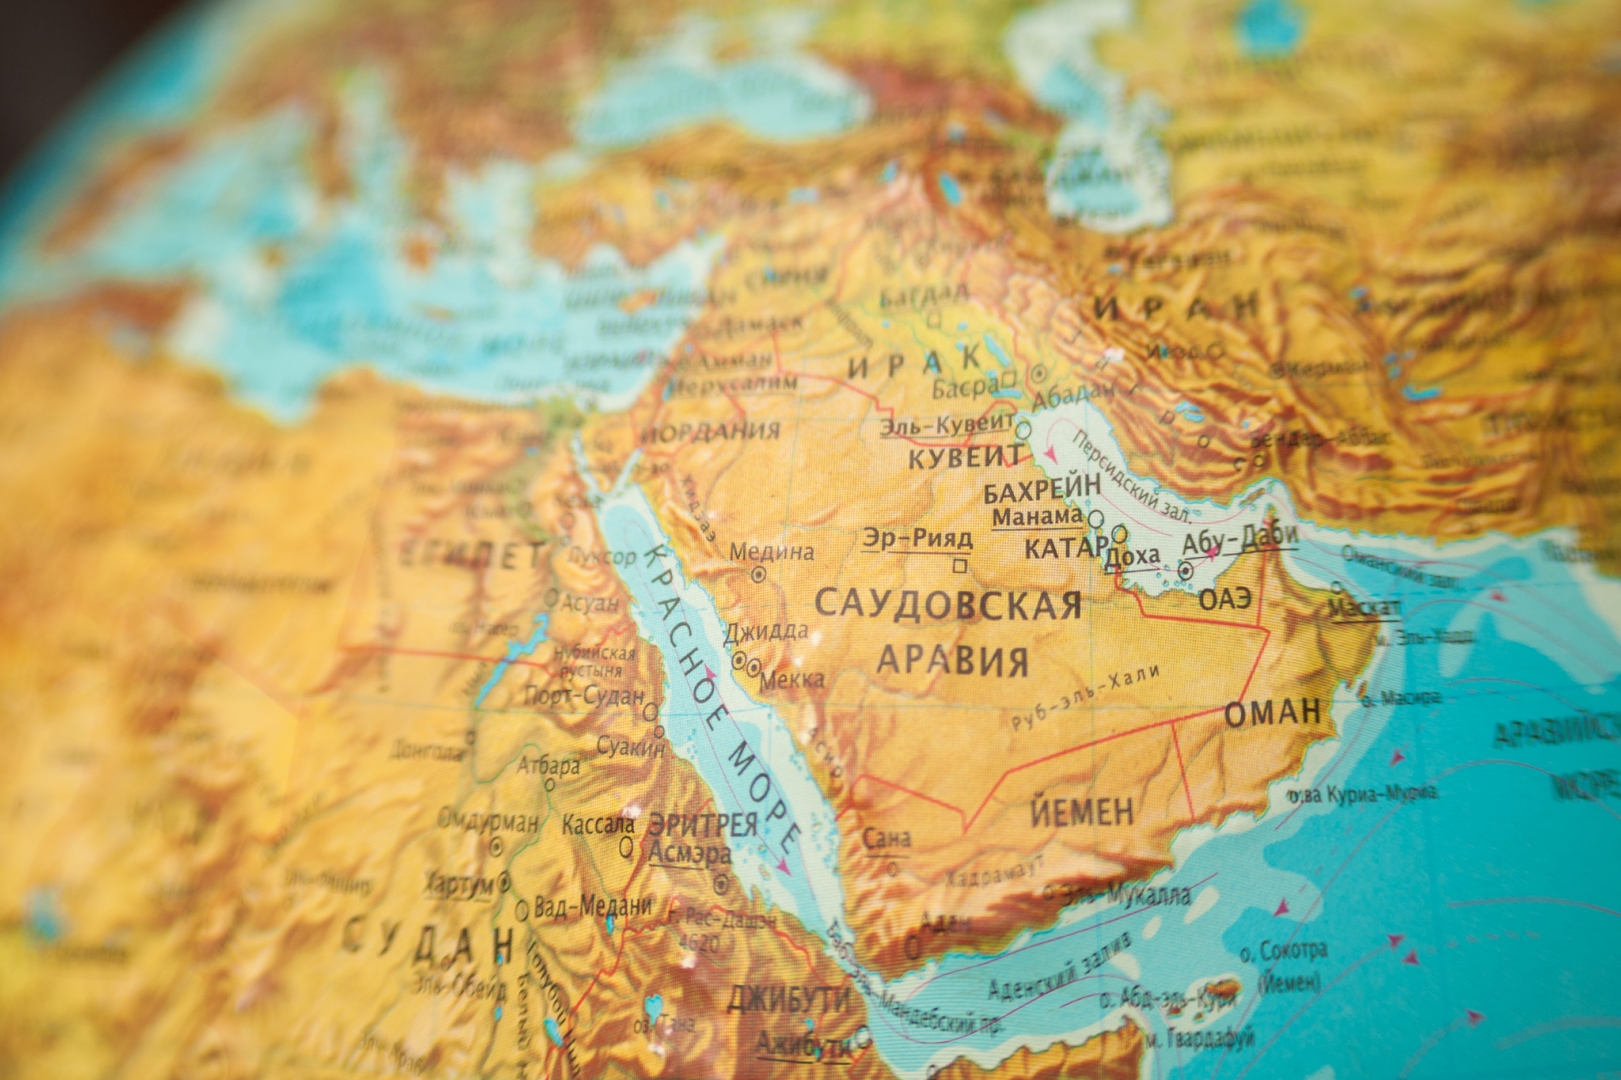 Саудовская аравия расположена. Аравийский полуостров и Саудовская Аравия на карте. Аравийский полуостров Саудовская Аравия. Столица Саудовской Аравии на карте. Аравийский полуостров Катар.